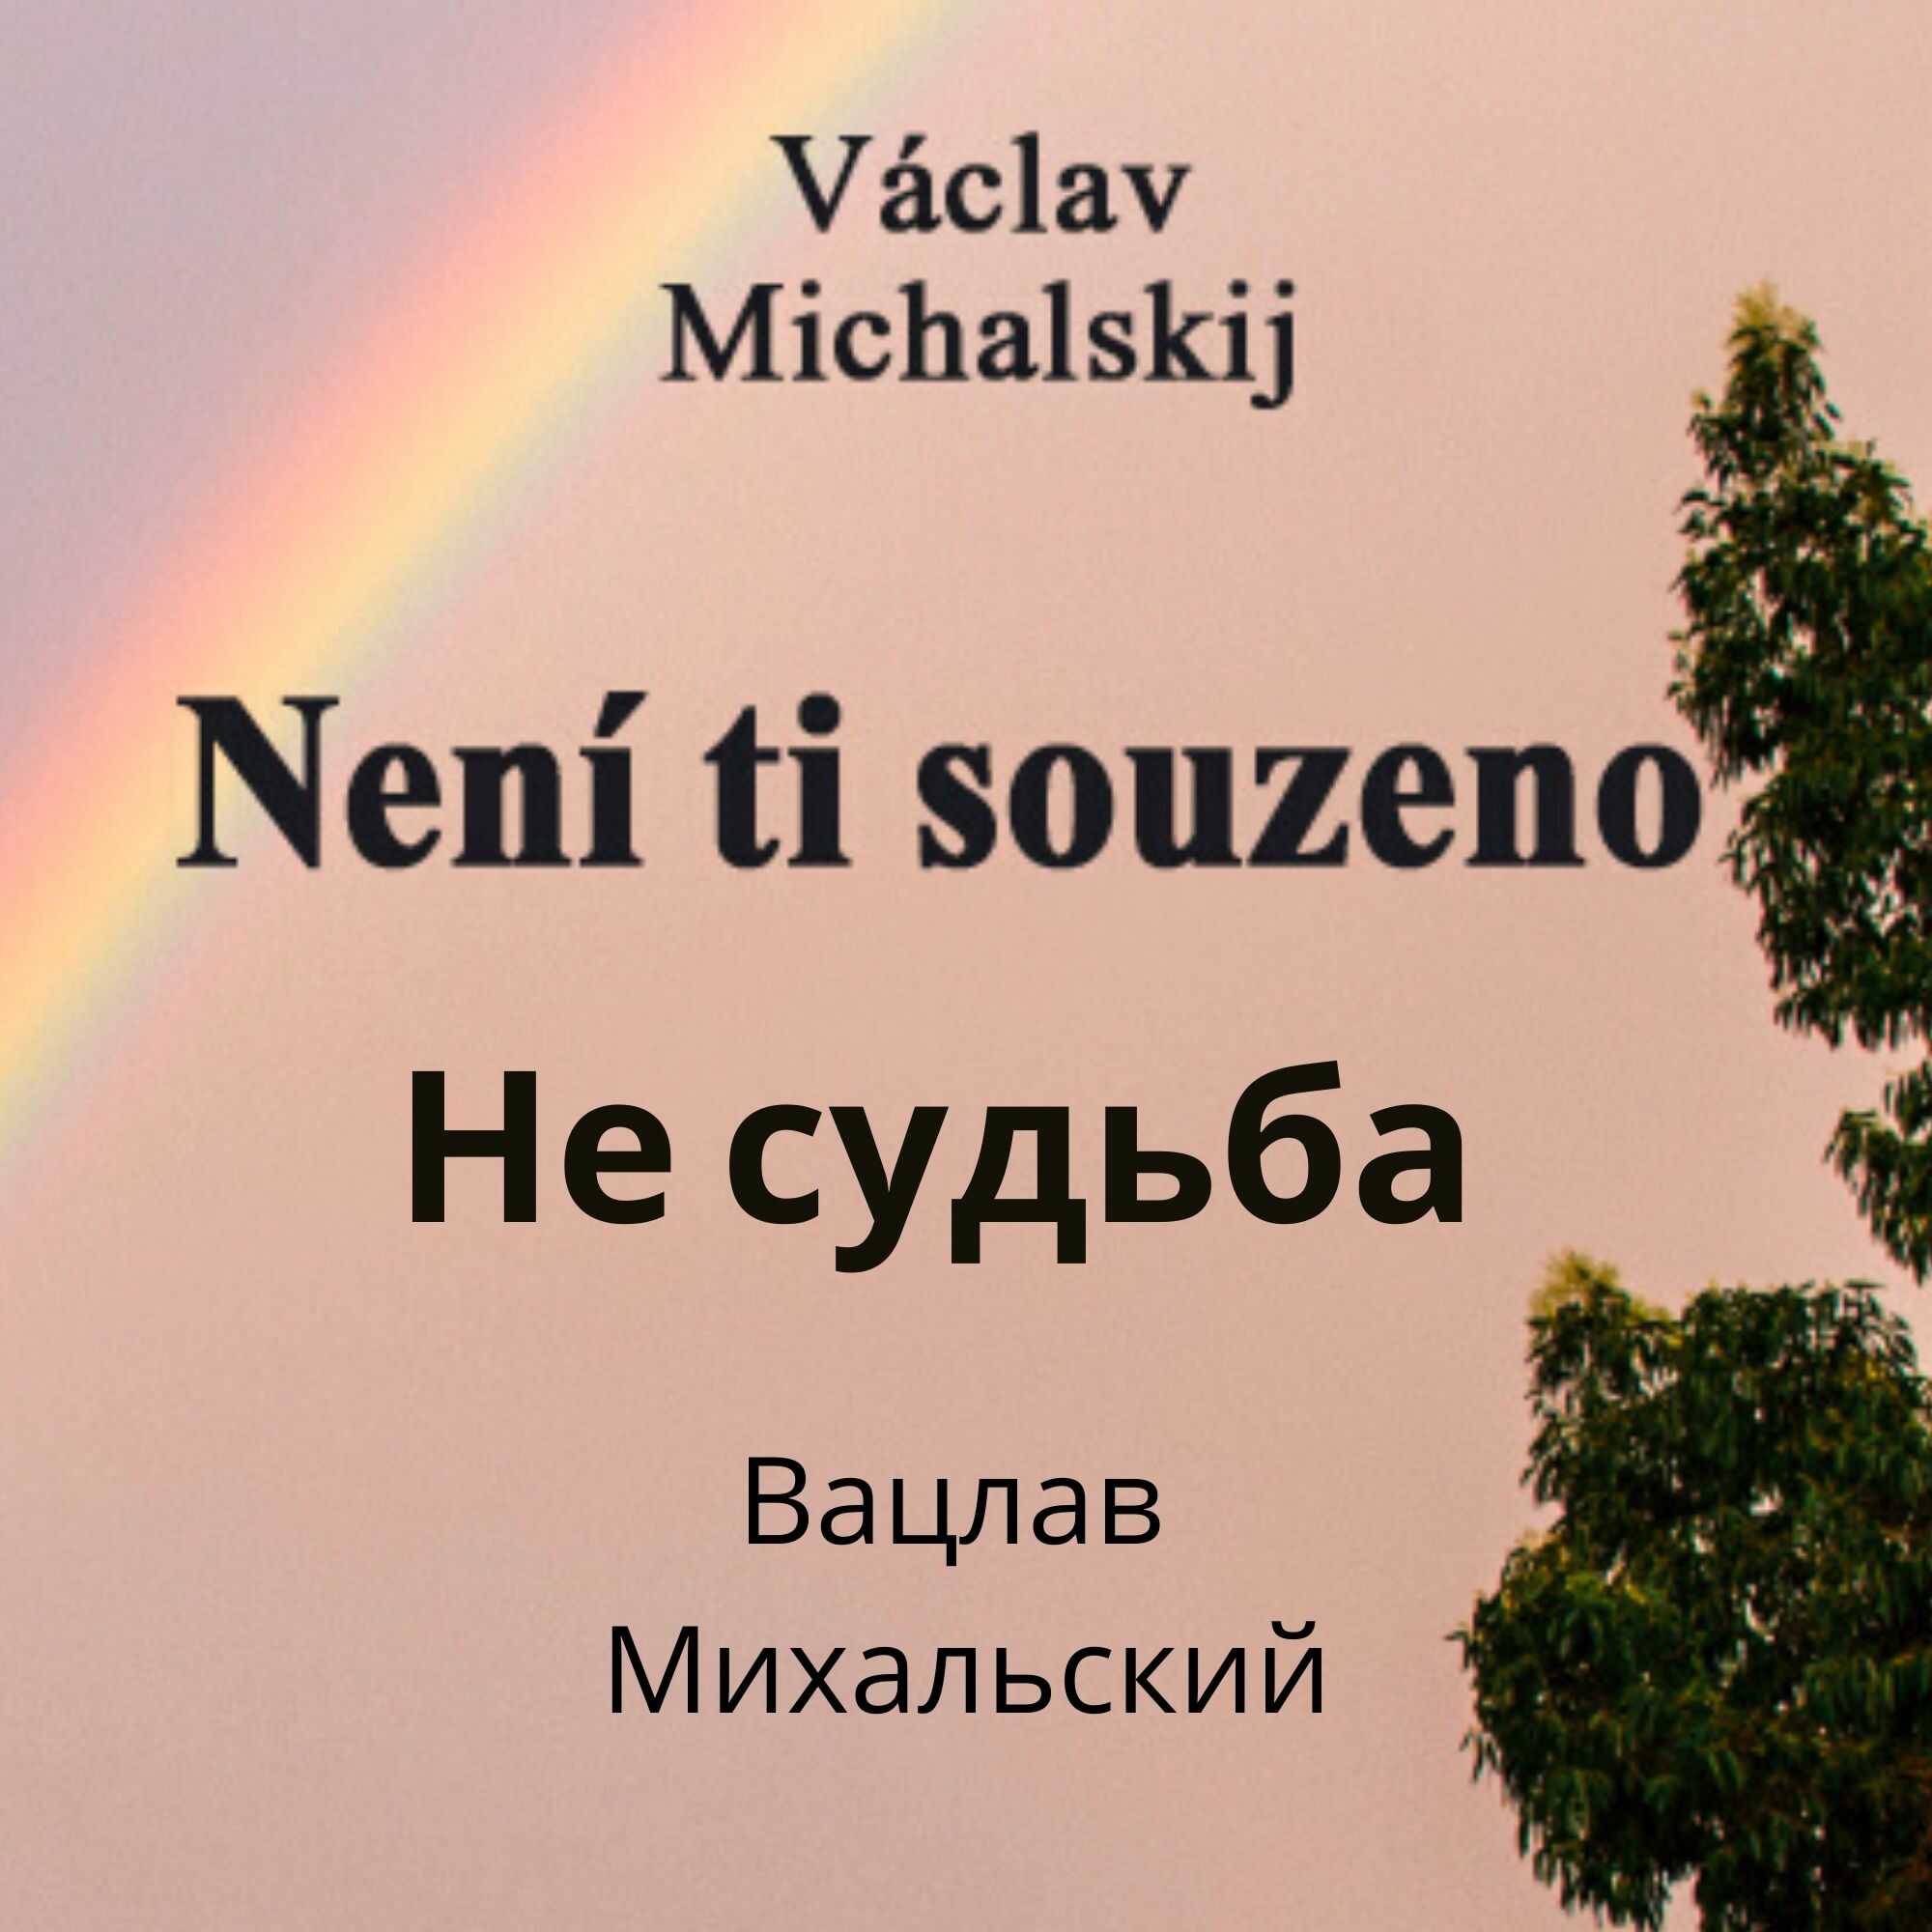 Václav Michalskij - Není Ti souzeno